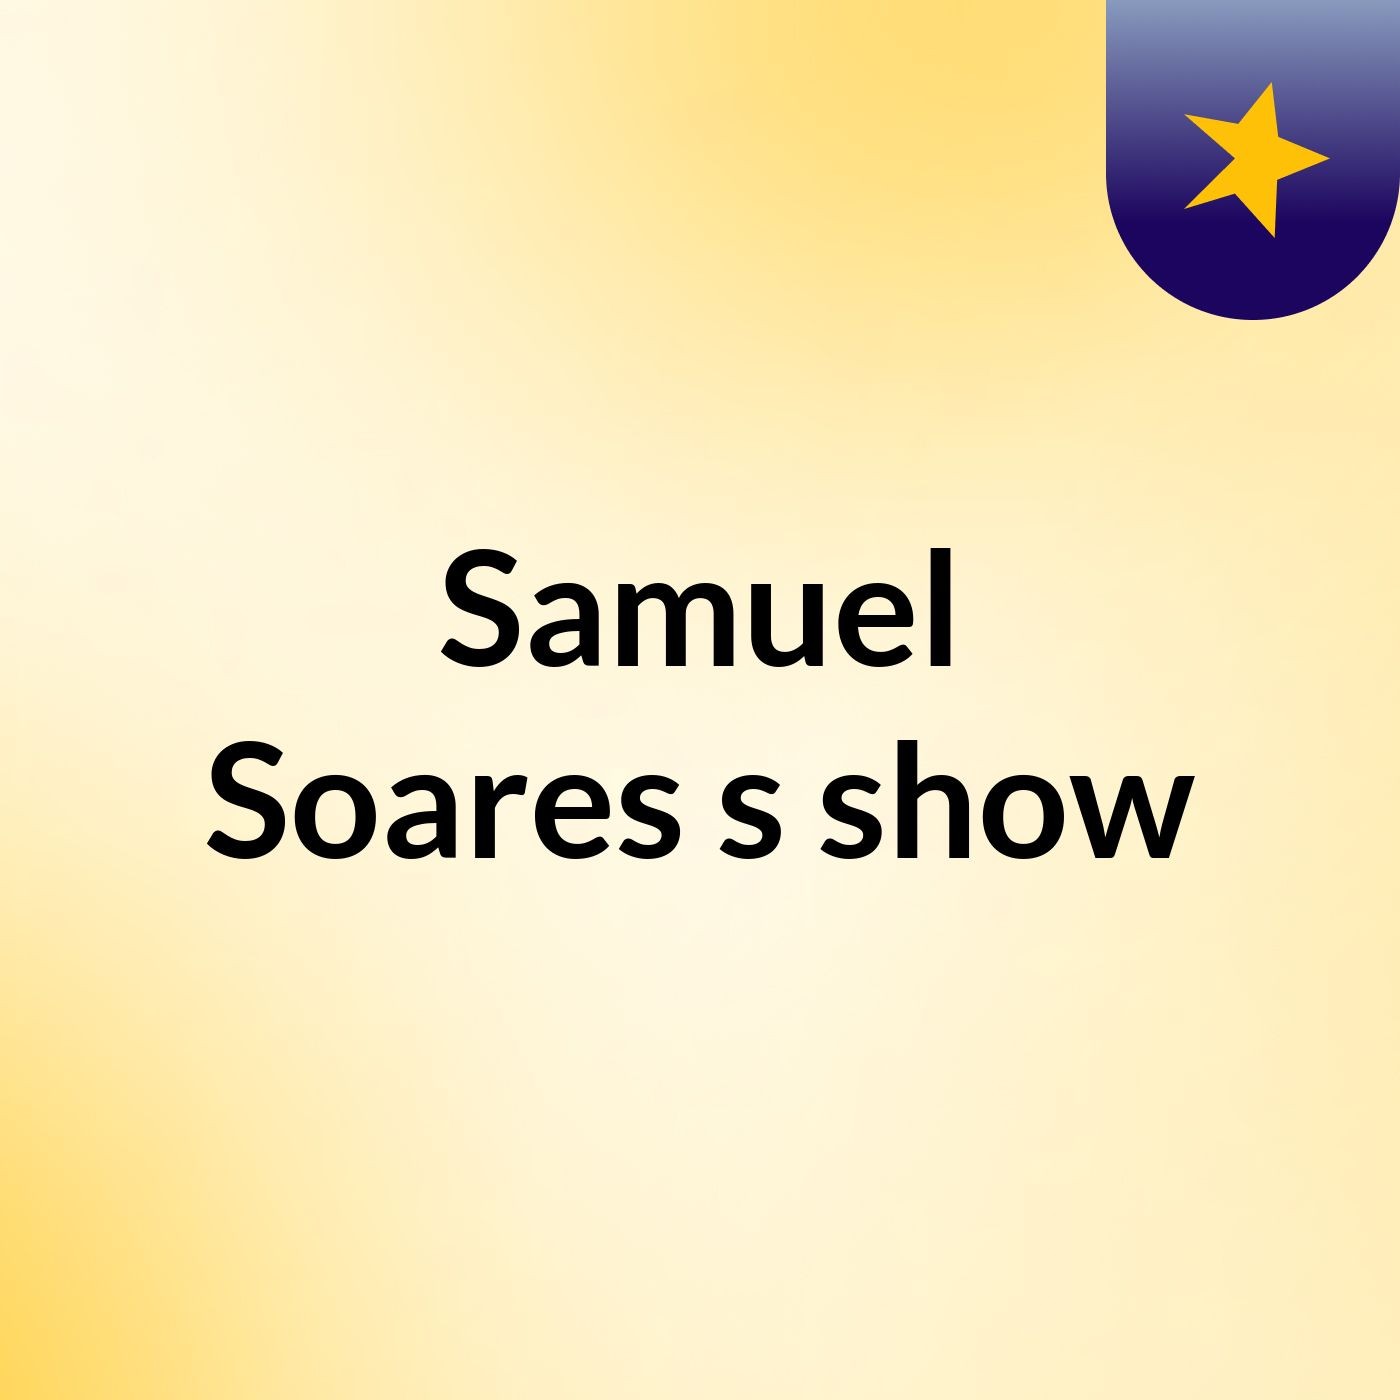 Samuel Soares's show